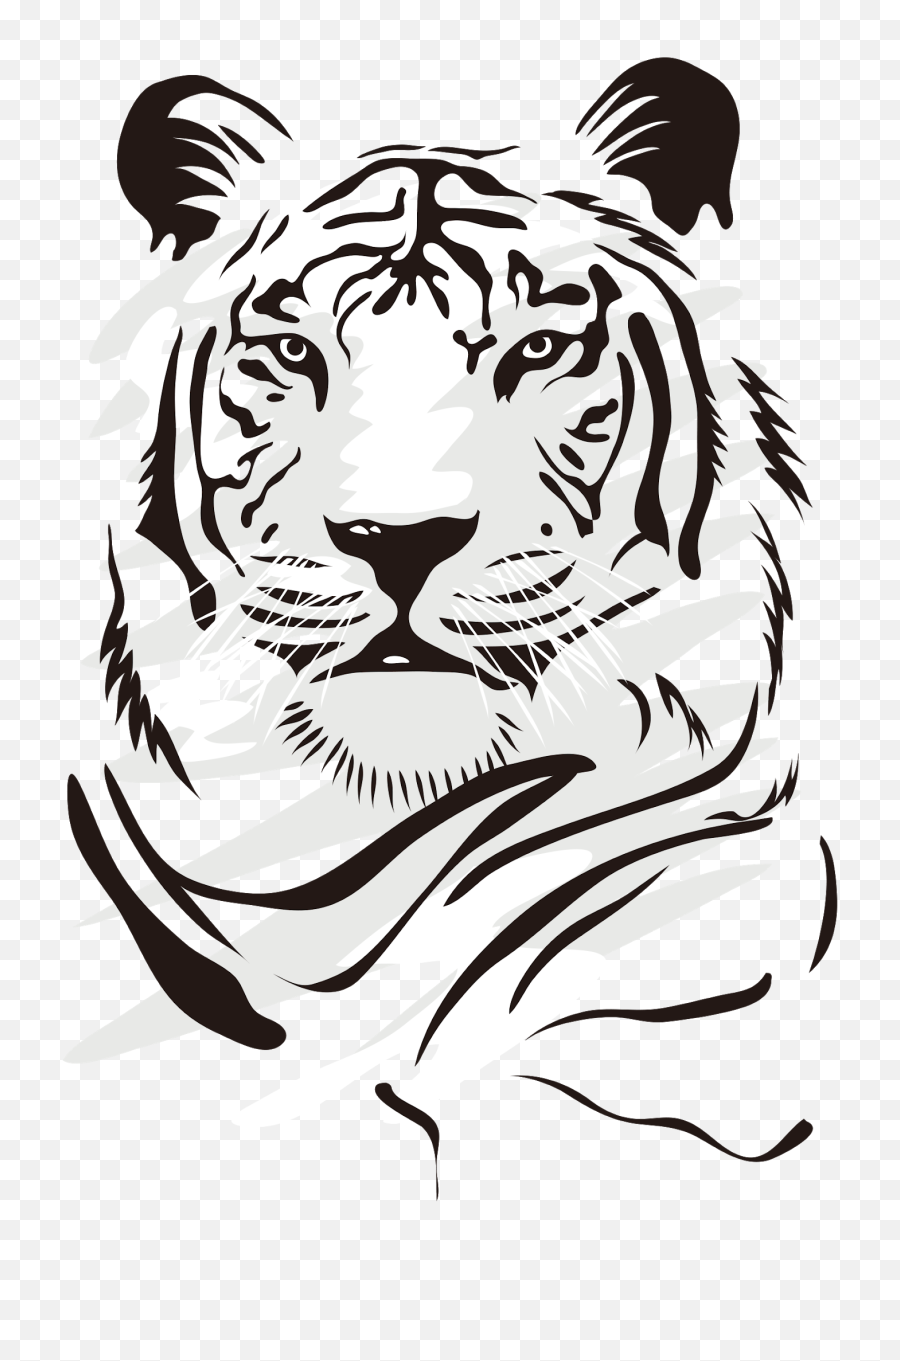 Tiger Free Png Images - Dibujos De Tigres Blancos,White Tiger Png